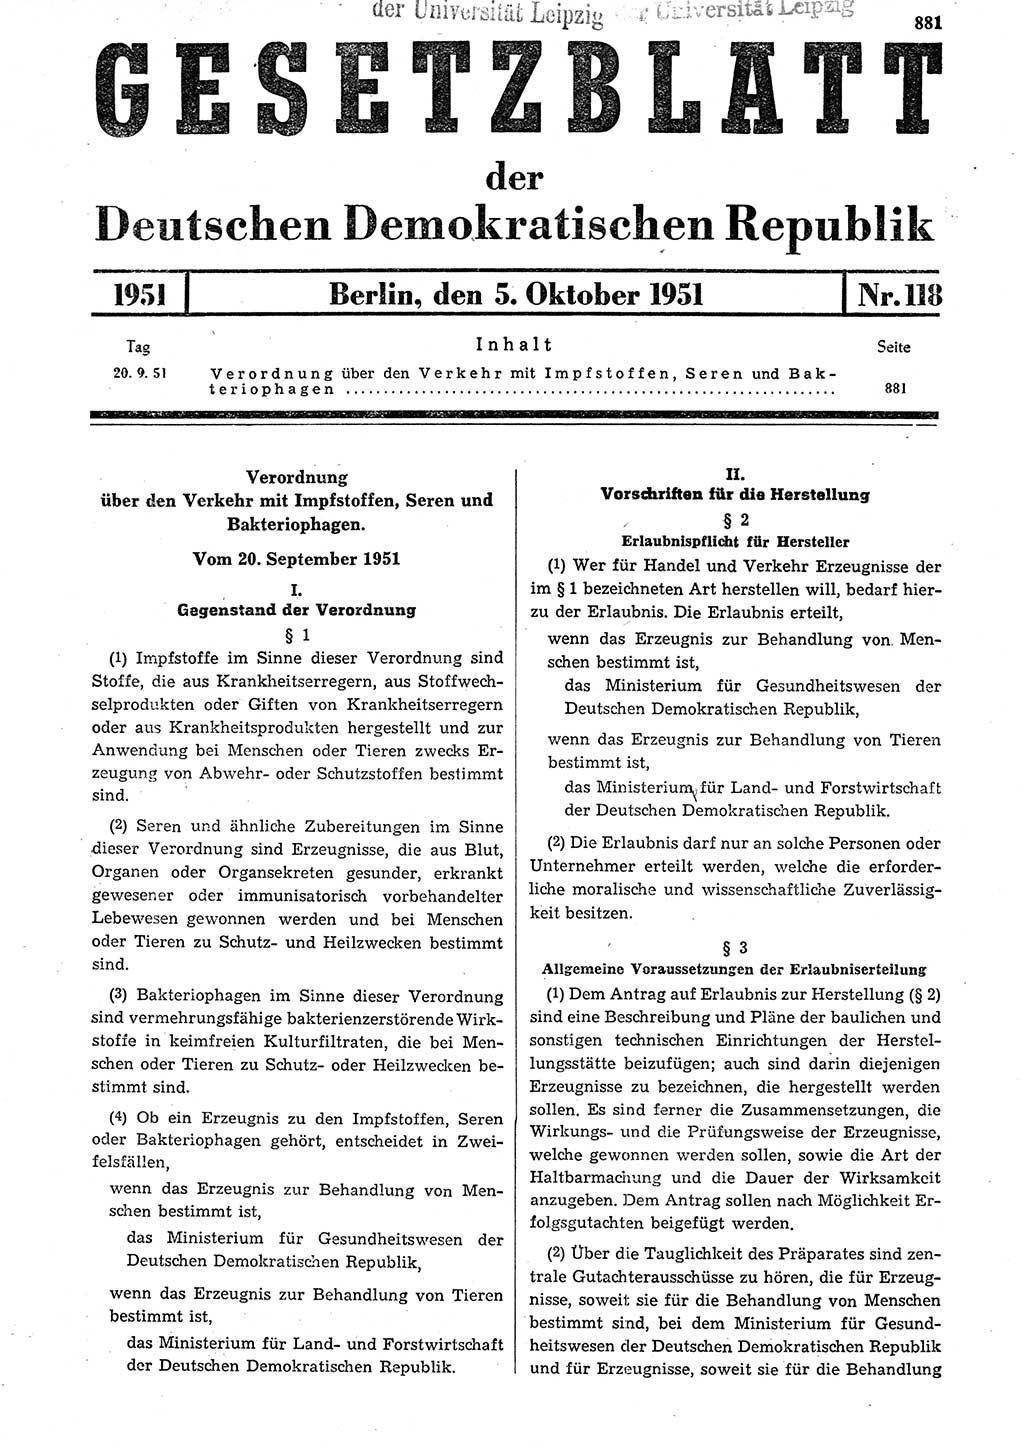 Gesetzblatt (GBl.) der Deutschen Demokratischen Republik (DDR) 1951, Seite 881 (GBl. DDR 1951, S. 881)